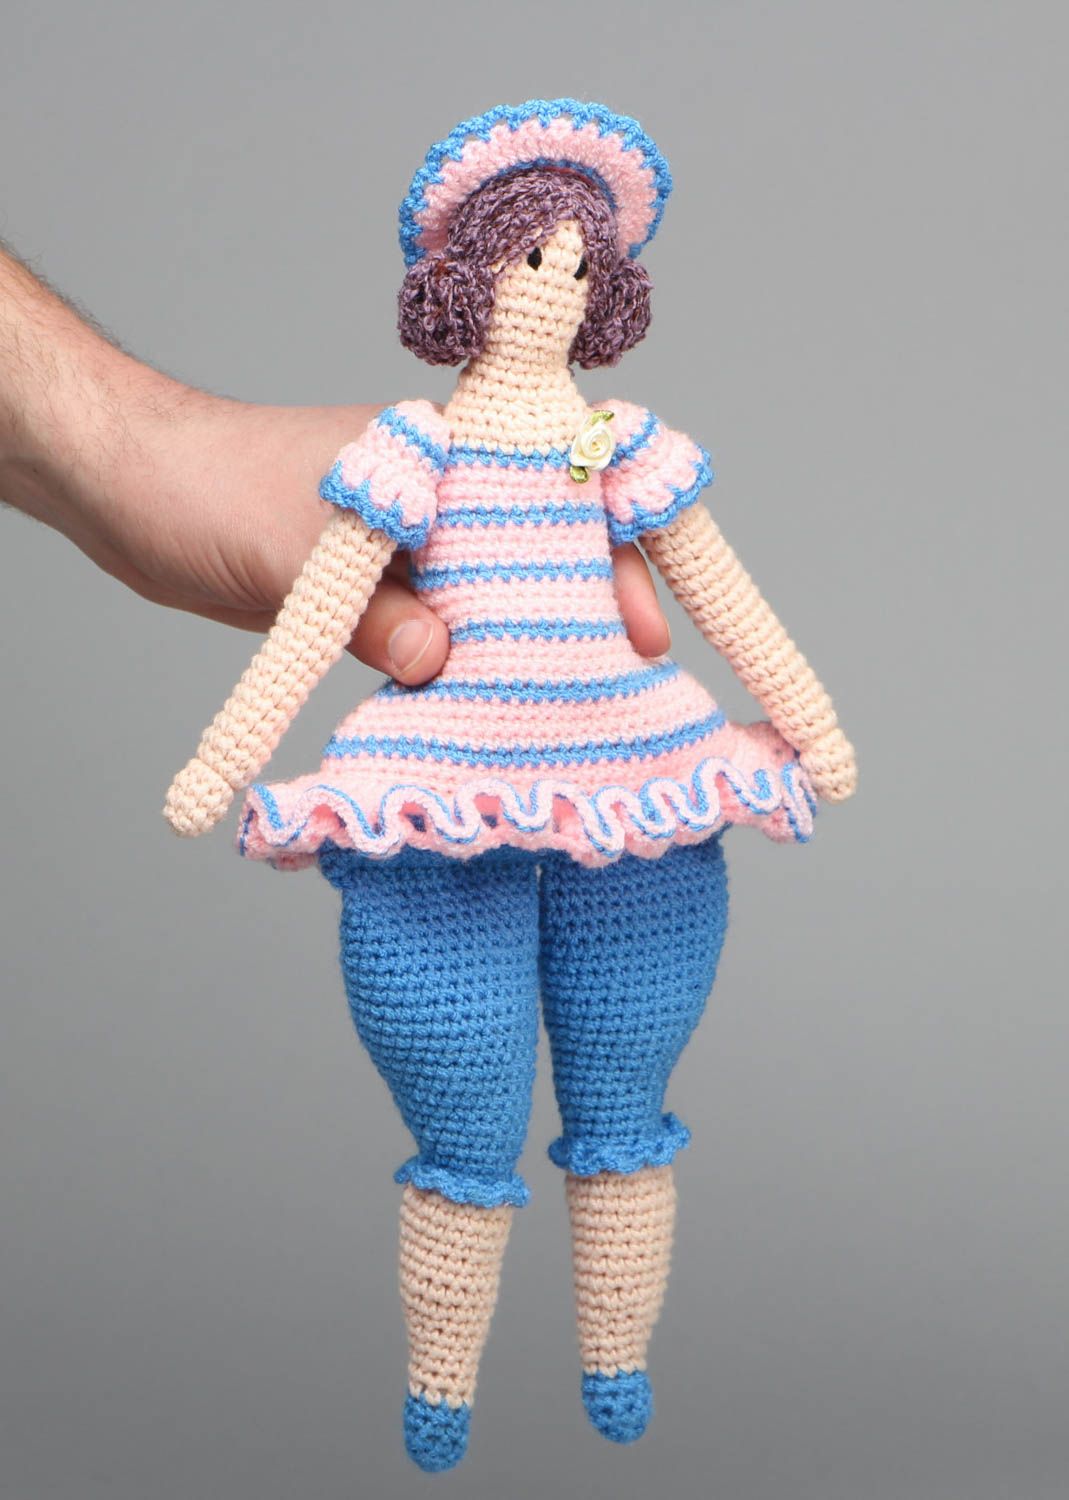 Crochet doll in hat photo 4